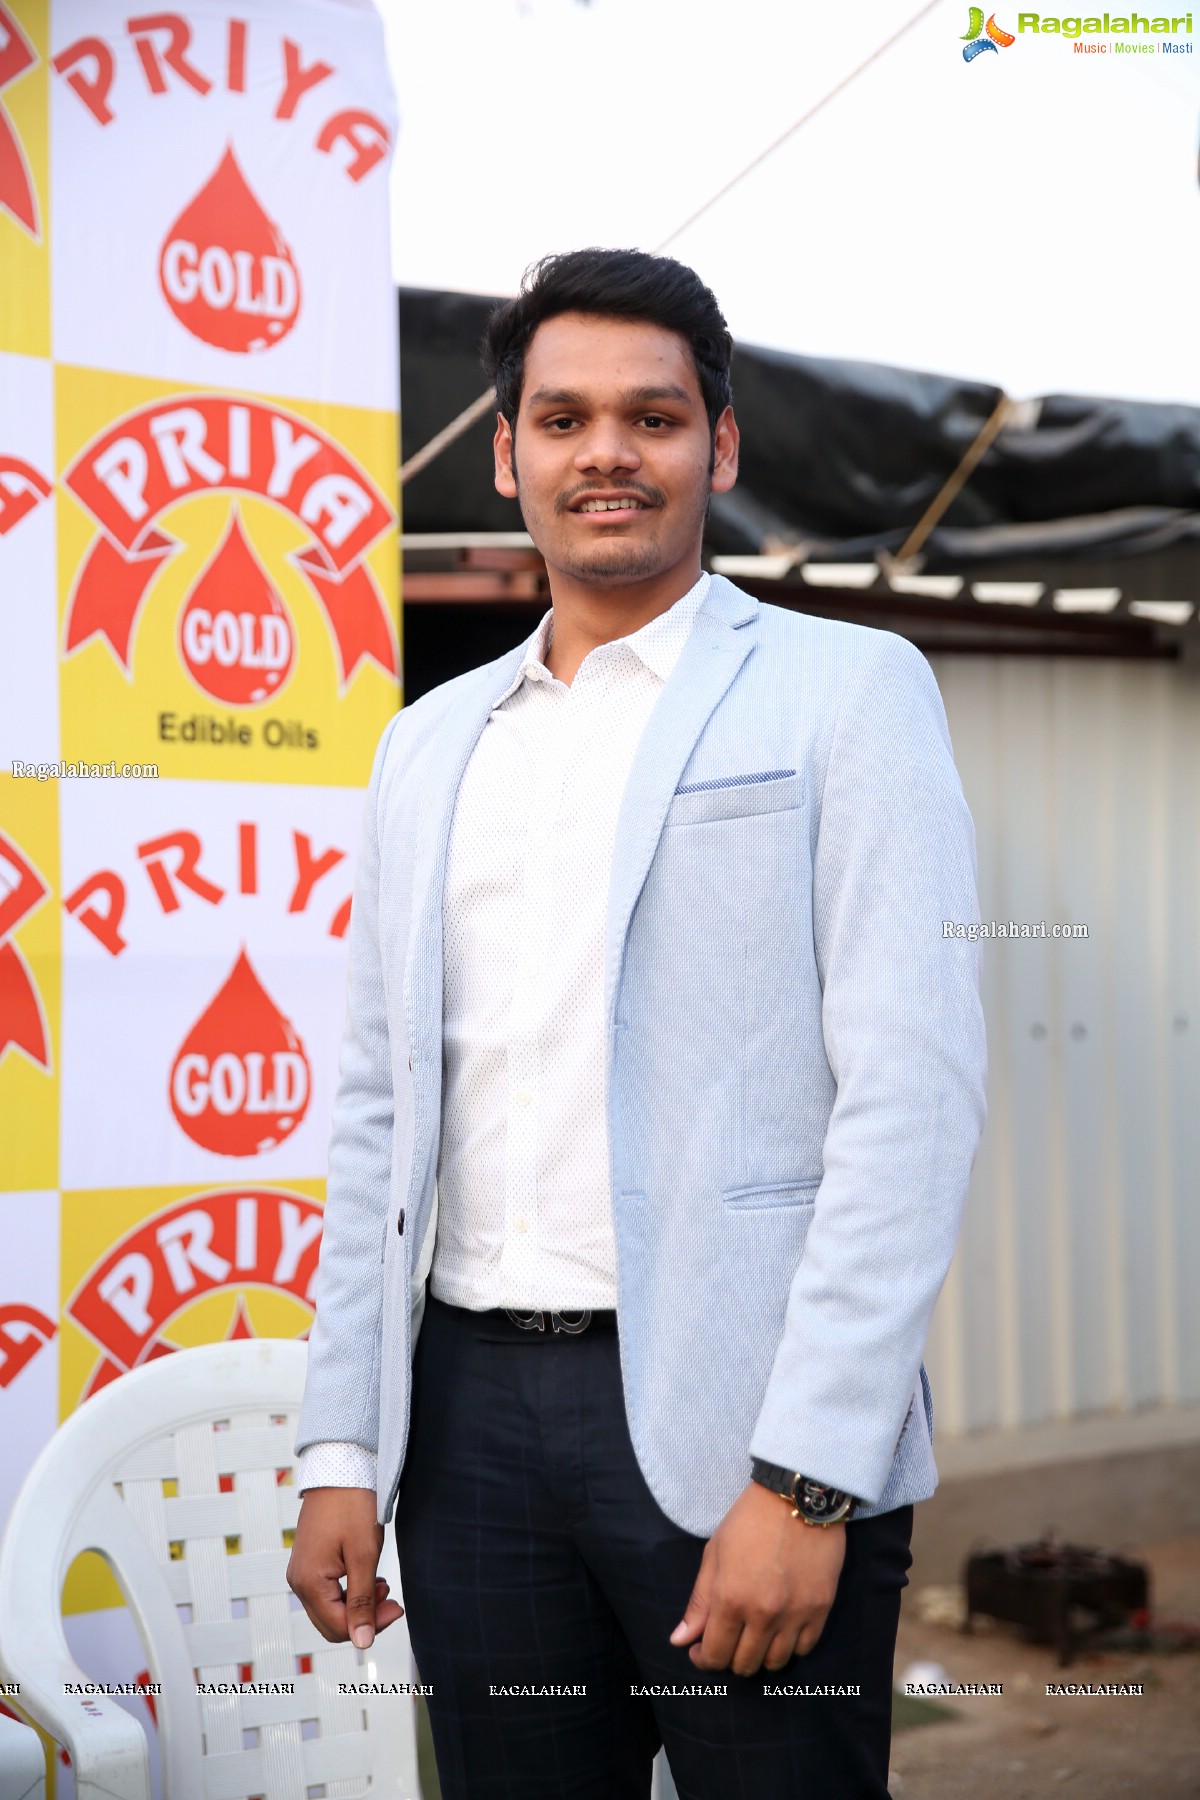 Priya Gold Edible Oils Sign Kajal Aggarwal as ‘Brand Ambassador’